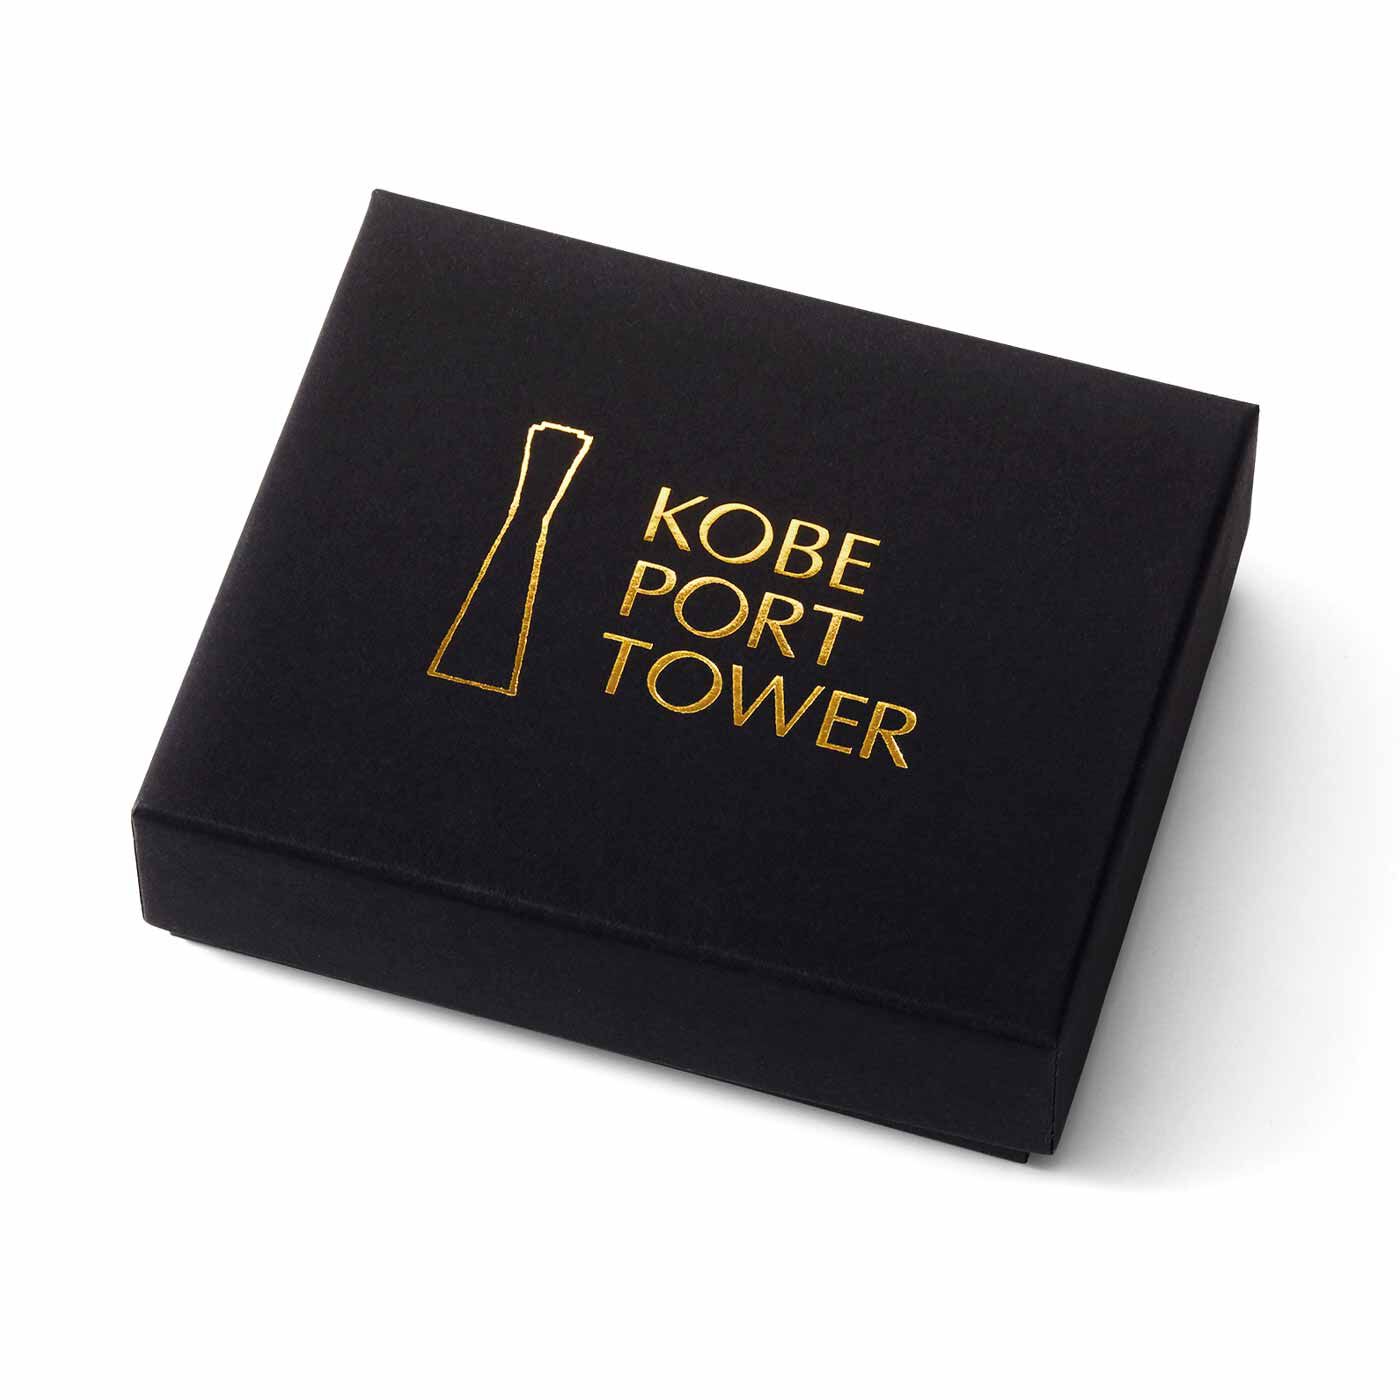 フェリシモコレクション|ブリリアンス神戸基金 KOBE PORT TOWER 耳にタワーな耳飾り|●お届けパッケージ